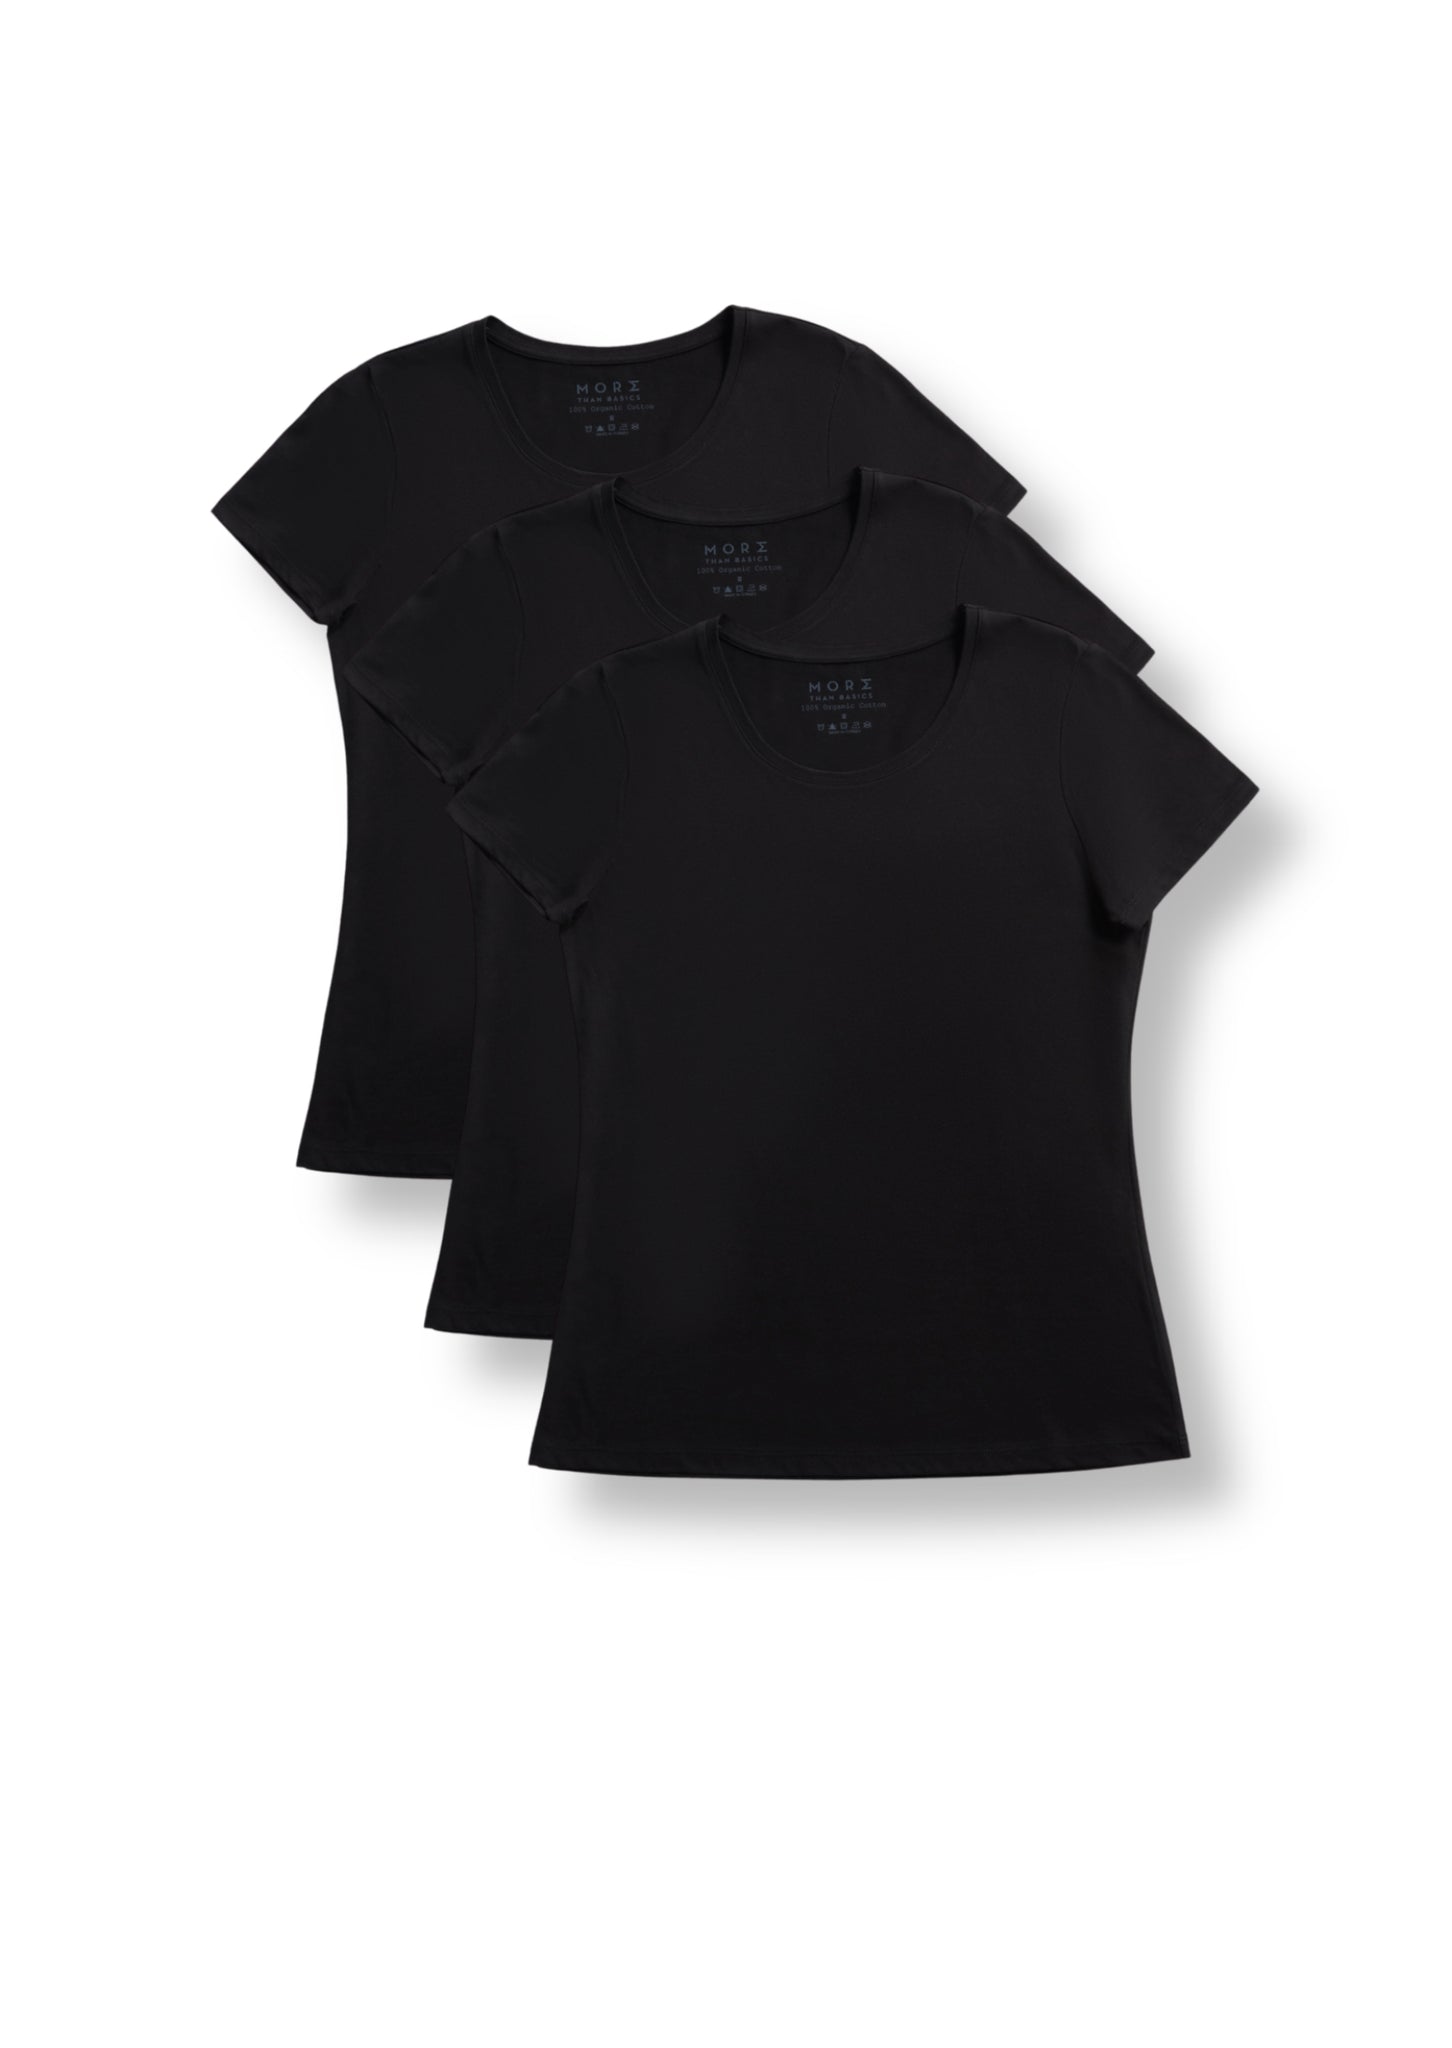 Women's TENCEL Modal Short-Sleeve Basic T-shirt 3-Pack – More Than Basics